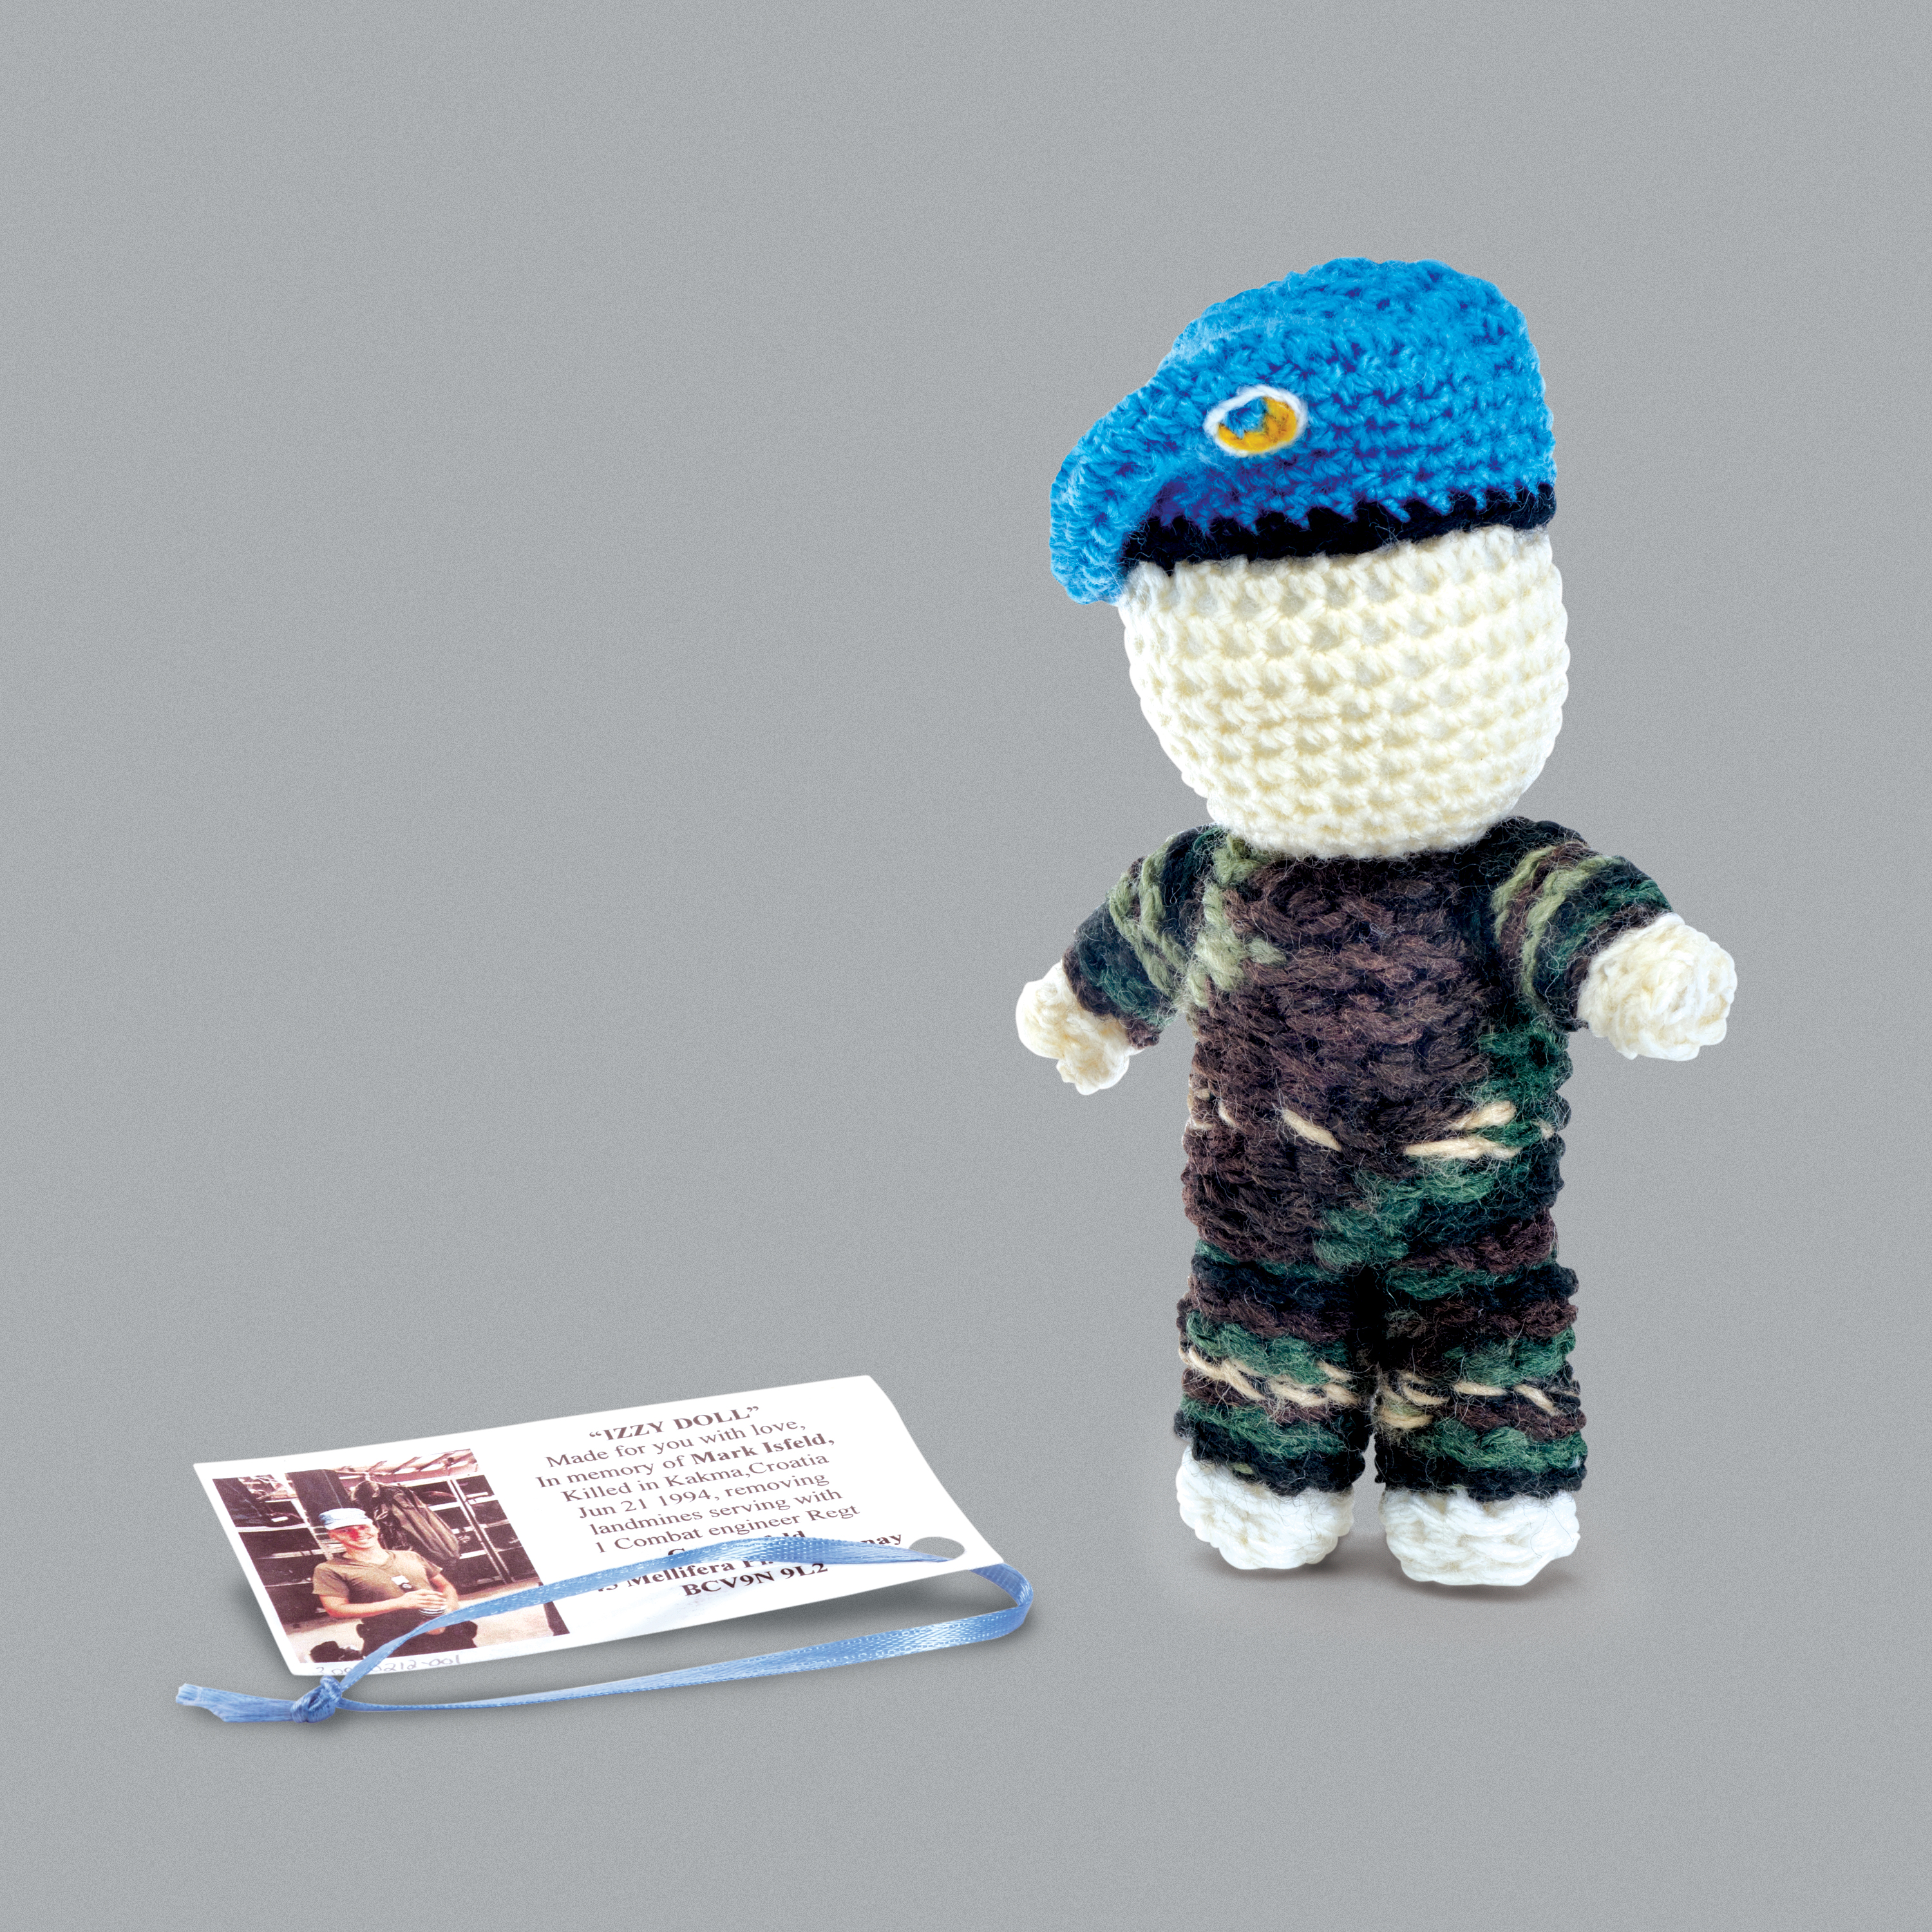 Petite poupée tricotée représentant un gardien de la paix canadien.//Small knitted doll to look like a Canadian peacekeeper